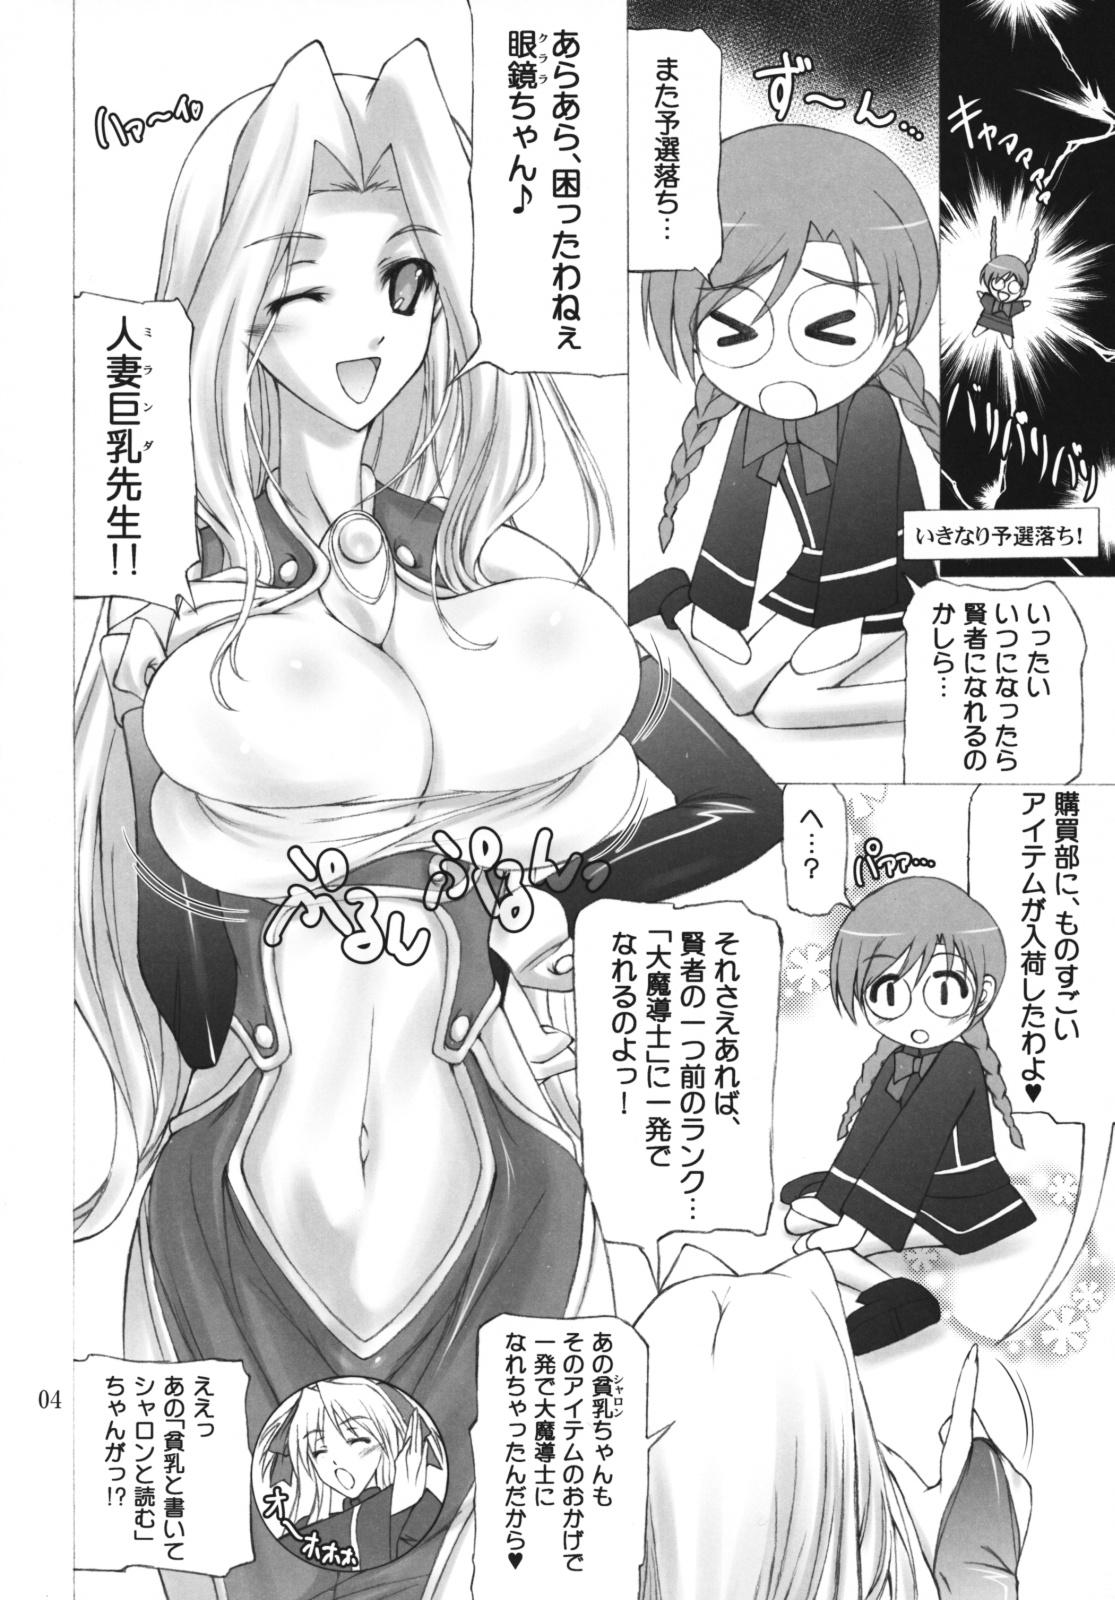 Suruba Quiz Chikara Udon Hajimemashita! - Quiz magic academy Transex - Page 3